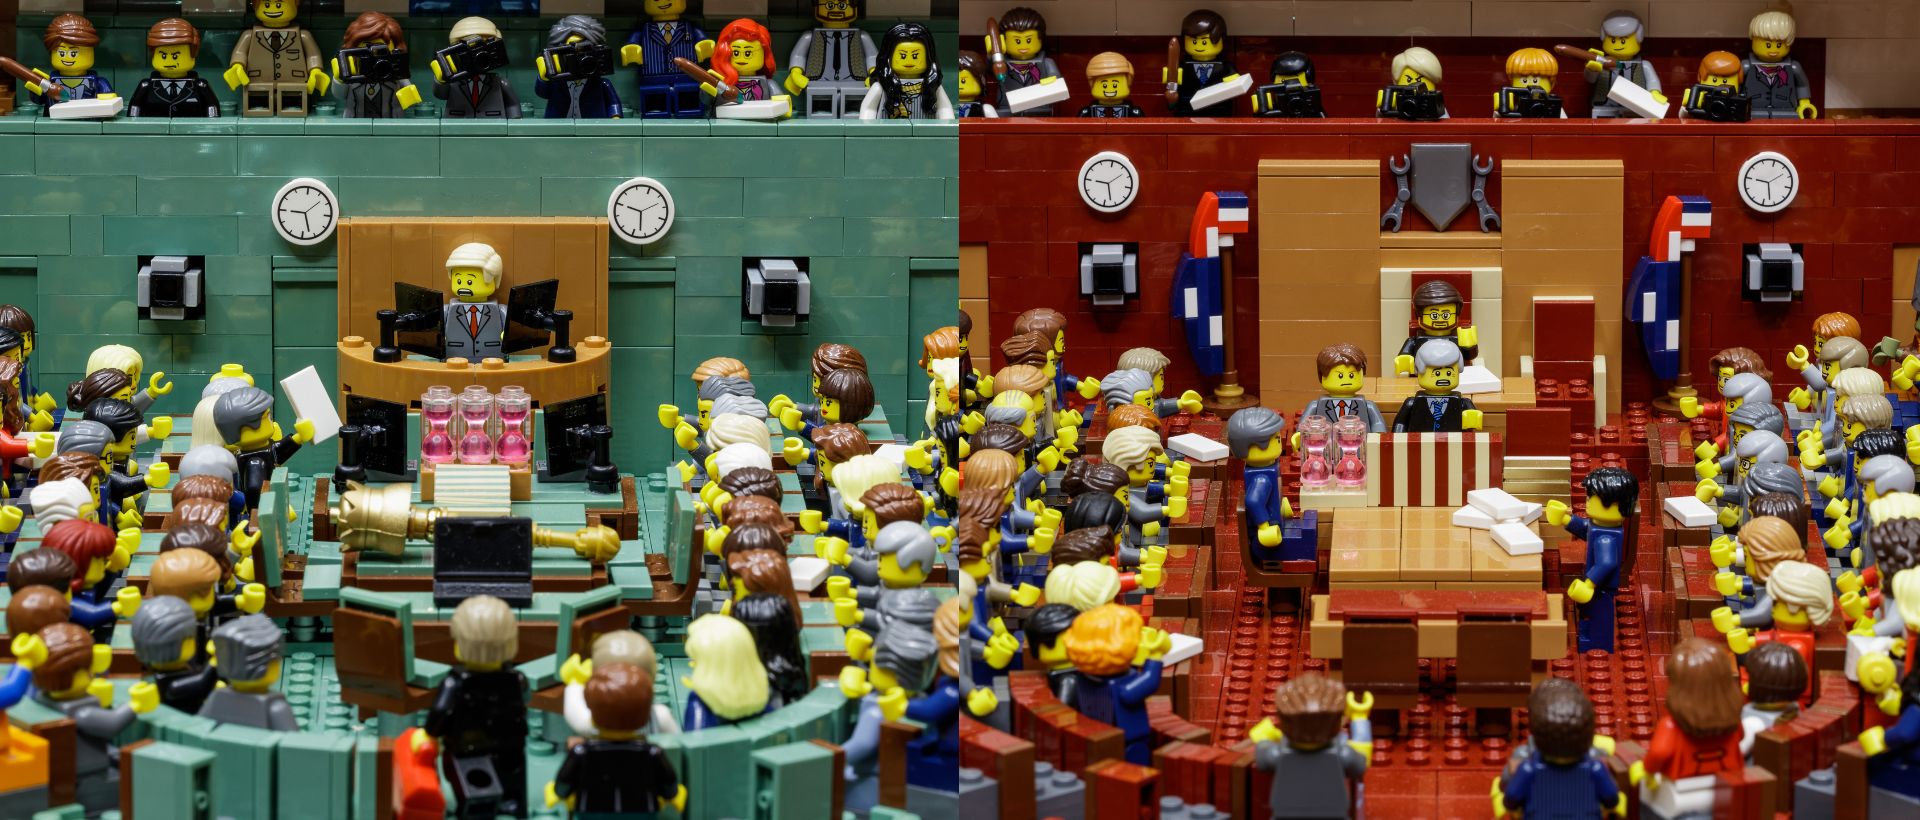 Lego Parliament House